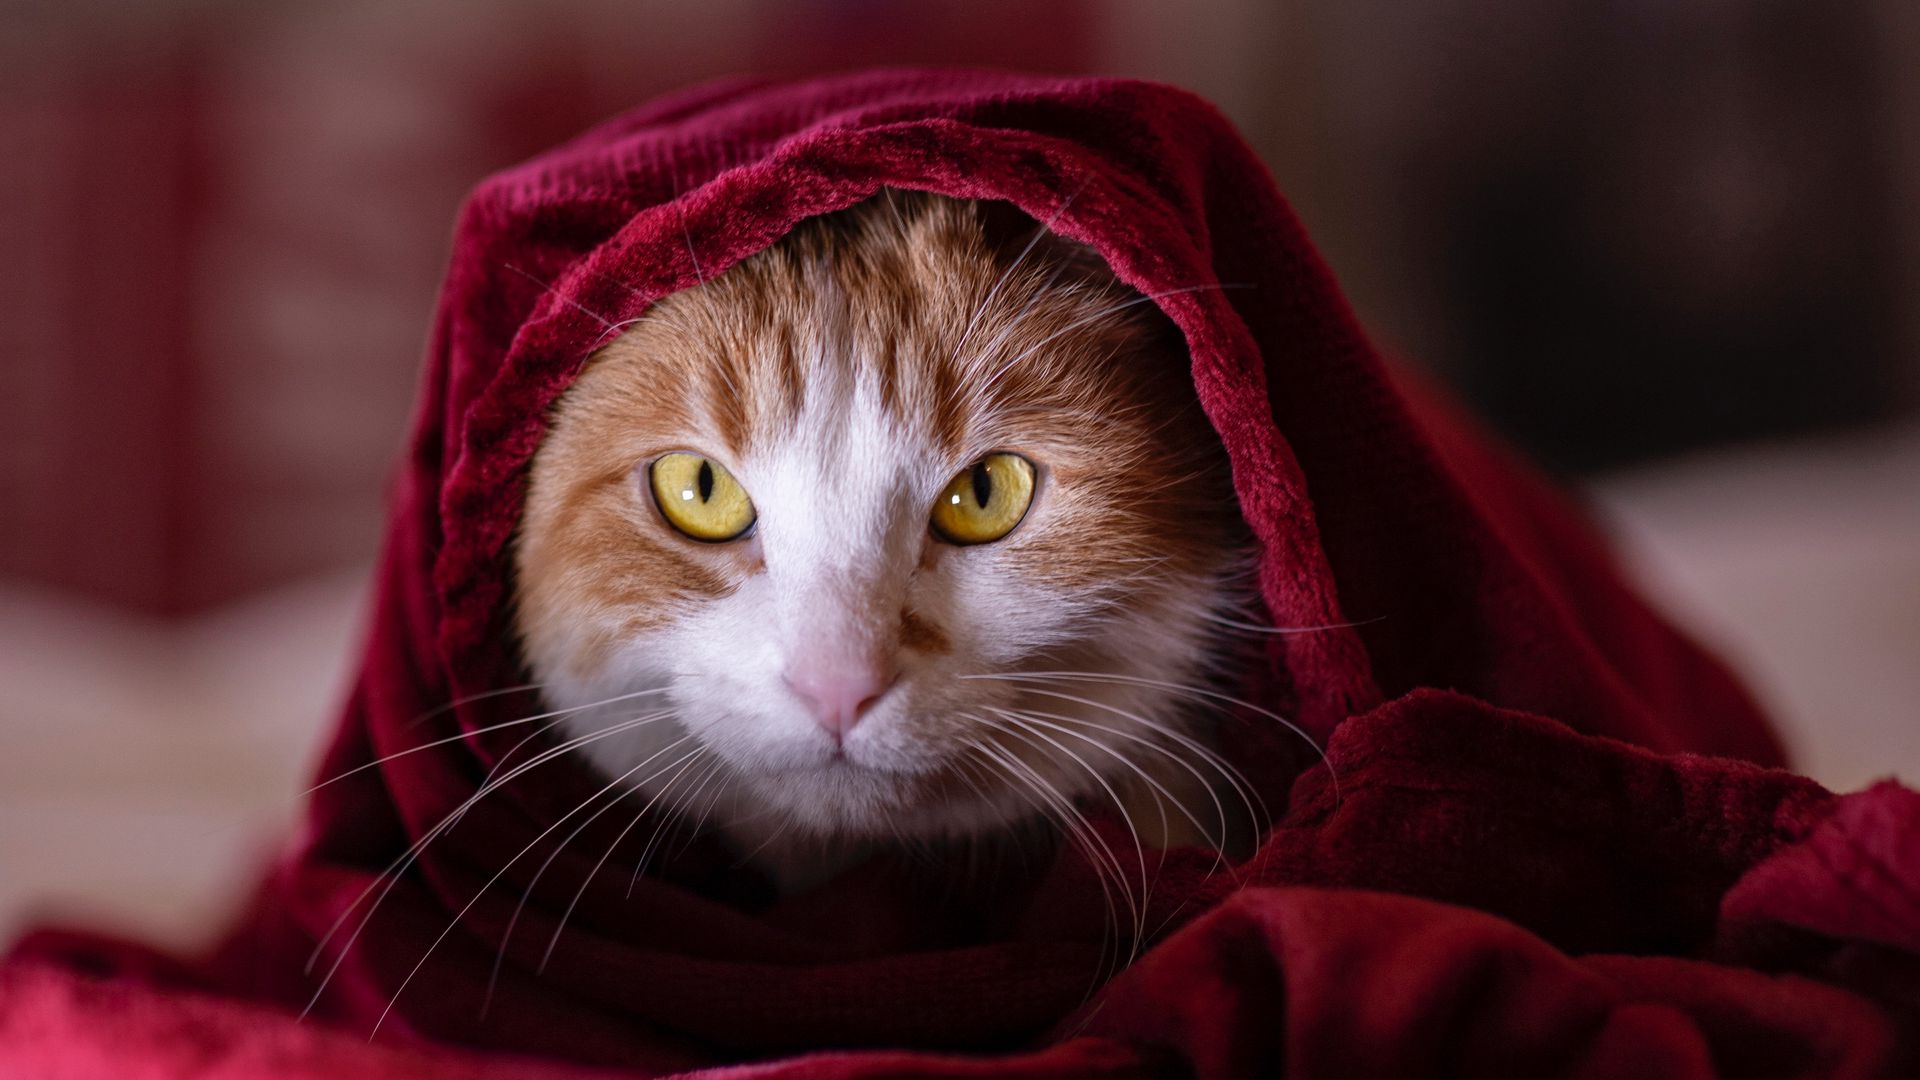 Cat Blanket, Pet Wallpapers Free Download - Desktop Wallpapers